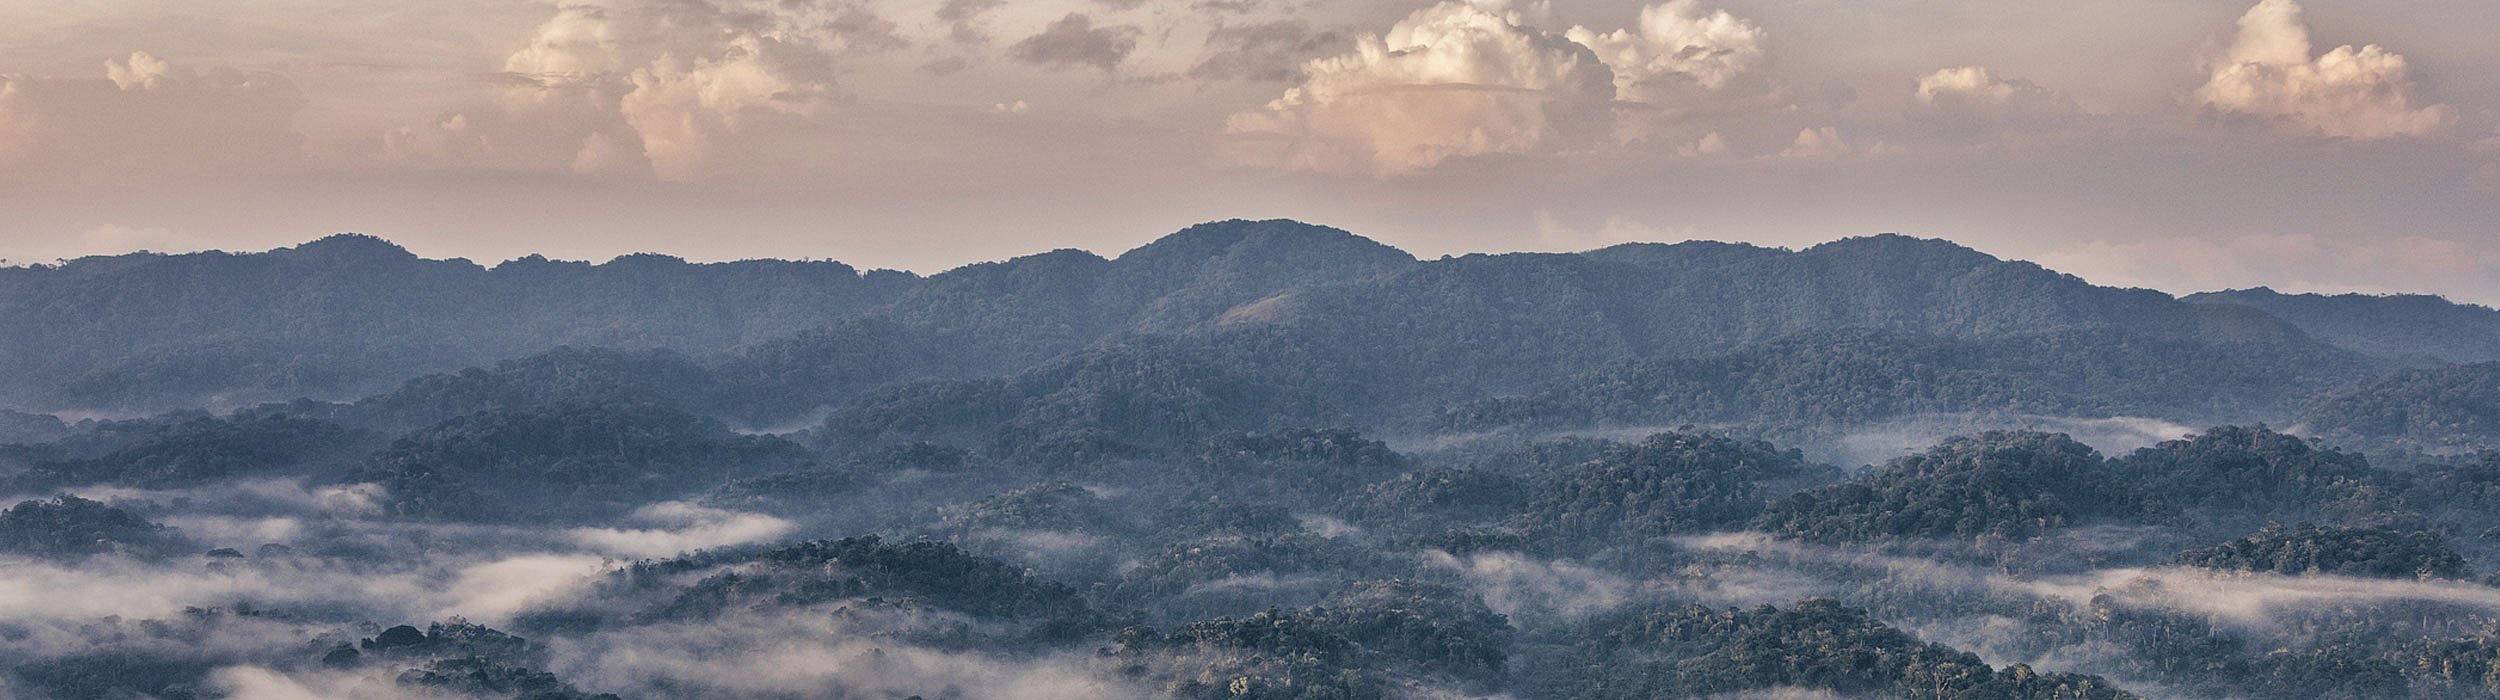 Brume matinale dans la forêt tropicale du Rwanda